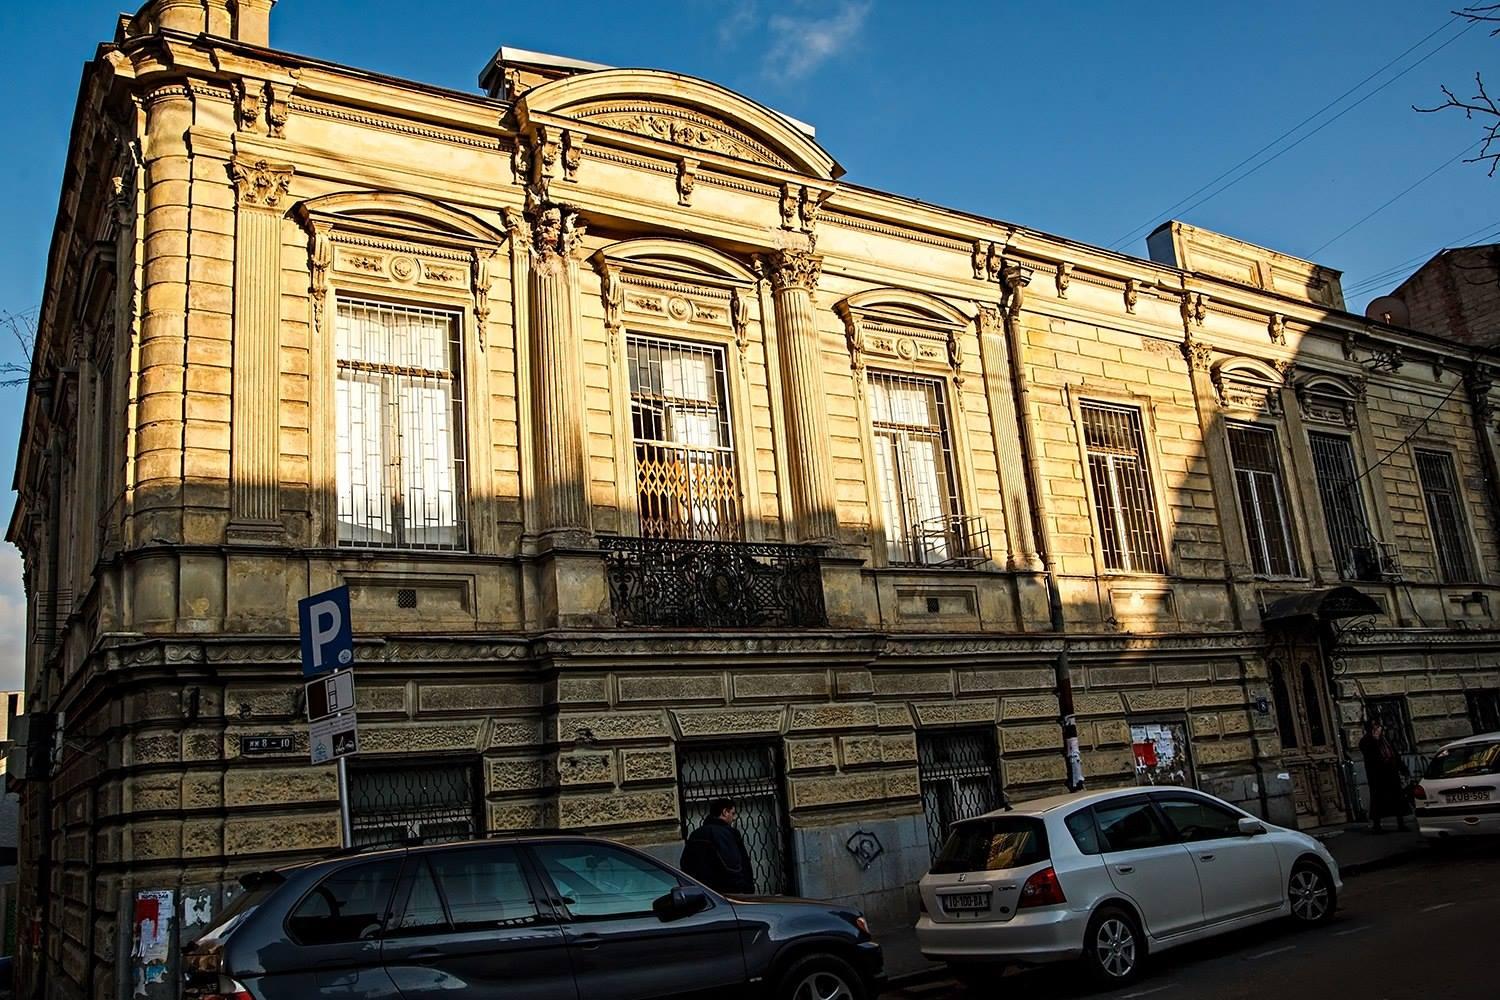 Дом Александра Манташева выставлен на продажу, Союз армян Тбилиси обращается с призывом о его спасении